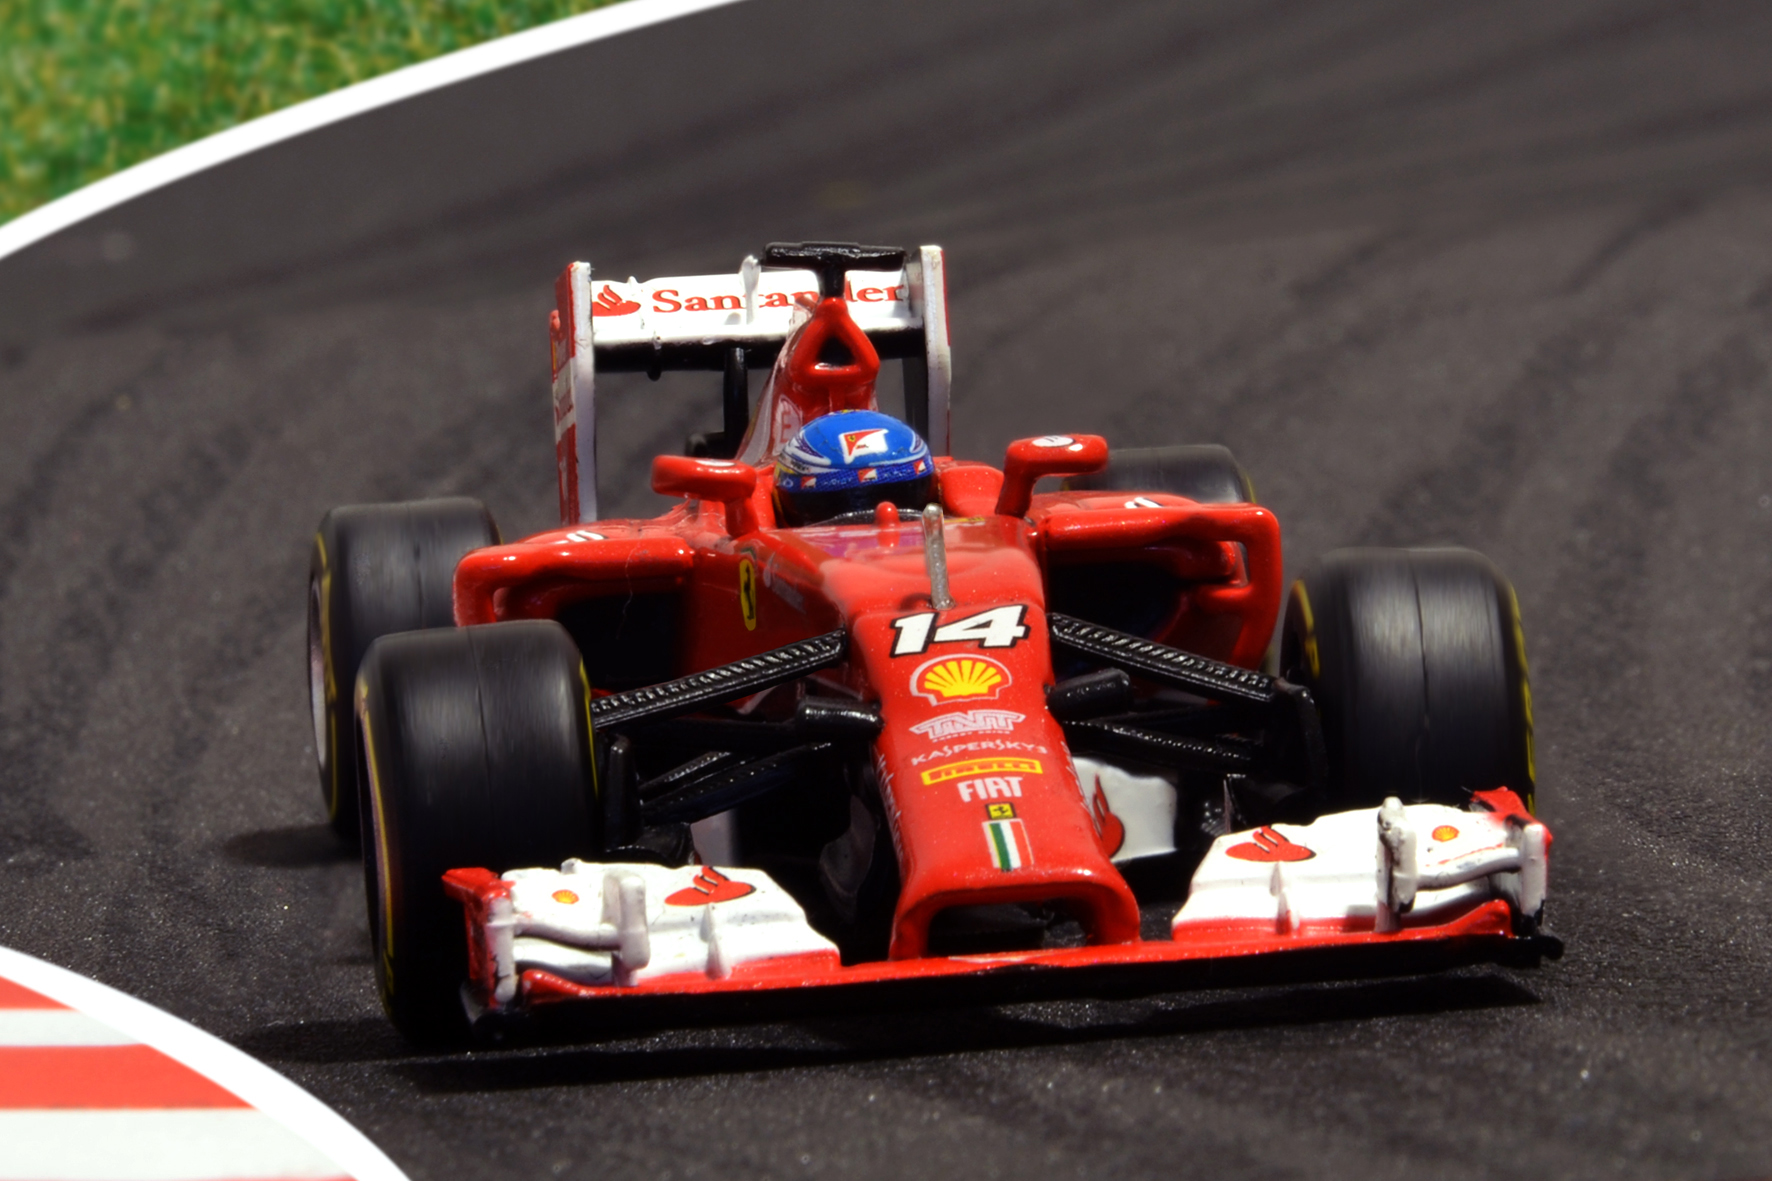 Ferrari F14-T Fernando Alonso 2014 - Hot Wheels 1:43